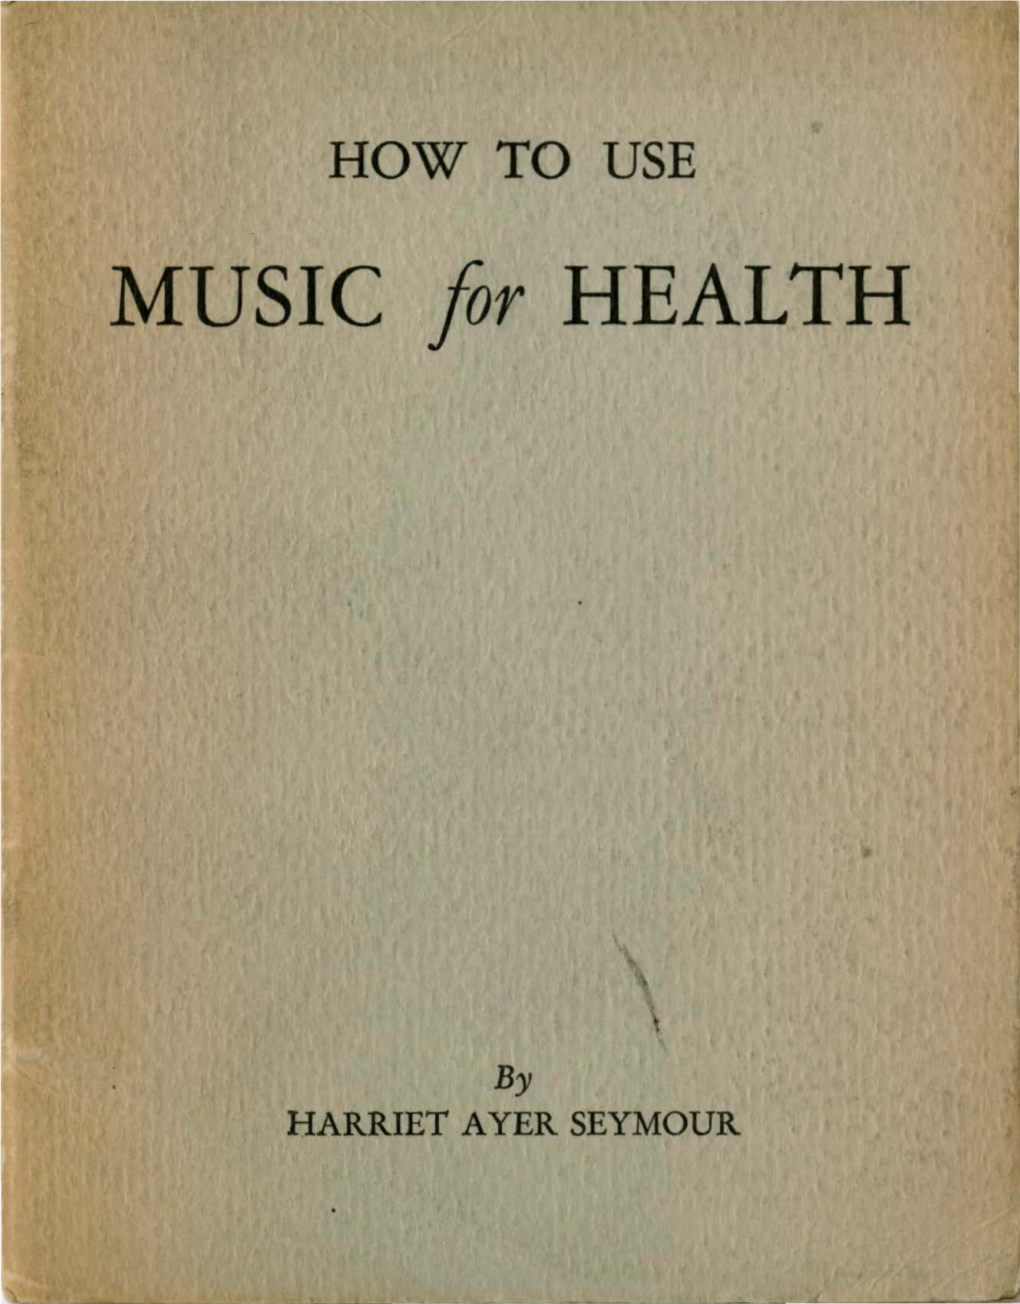 MUSIC Far HEALTH